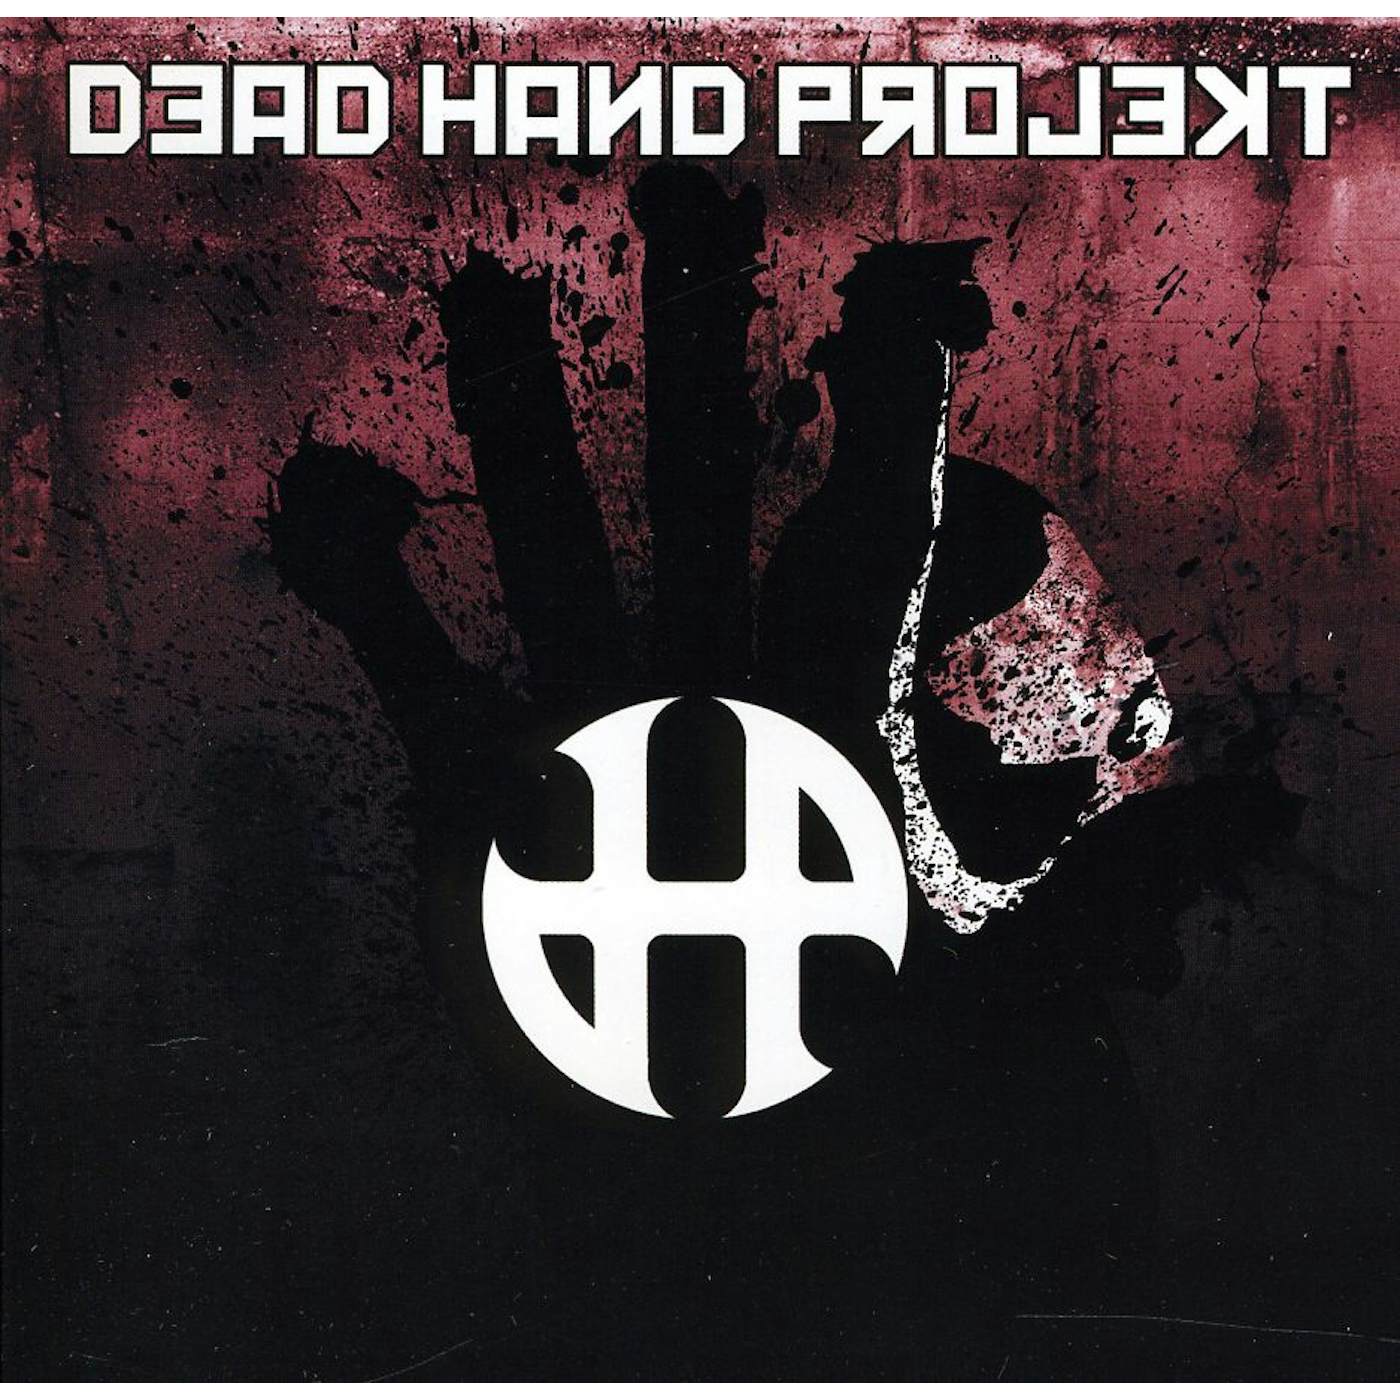 DEAD HAND PROJEKT CD